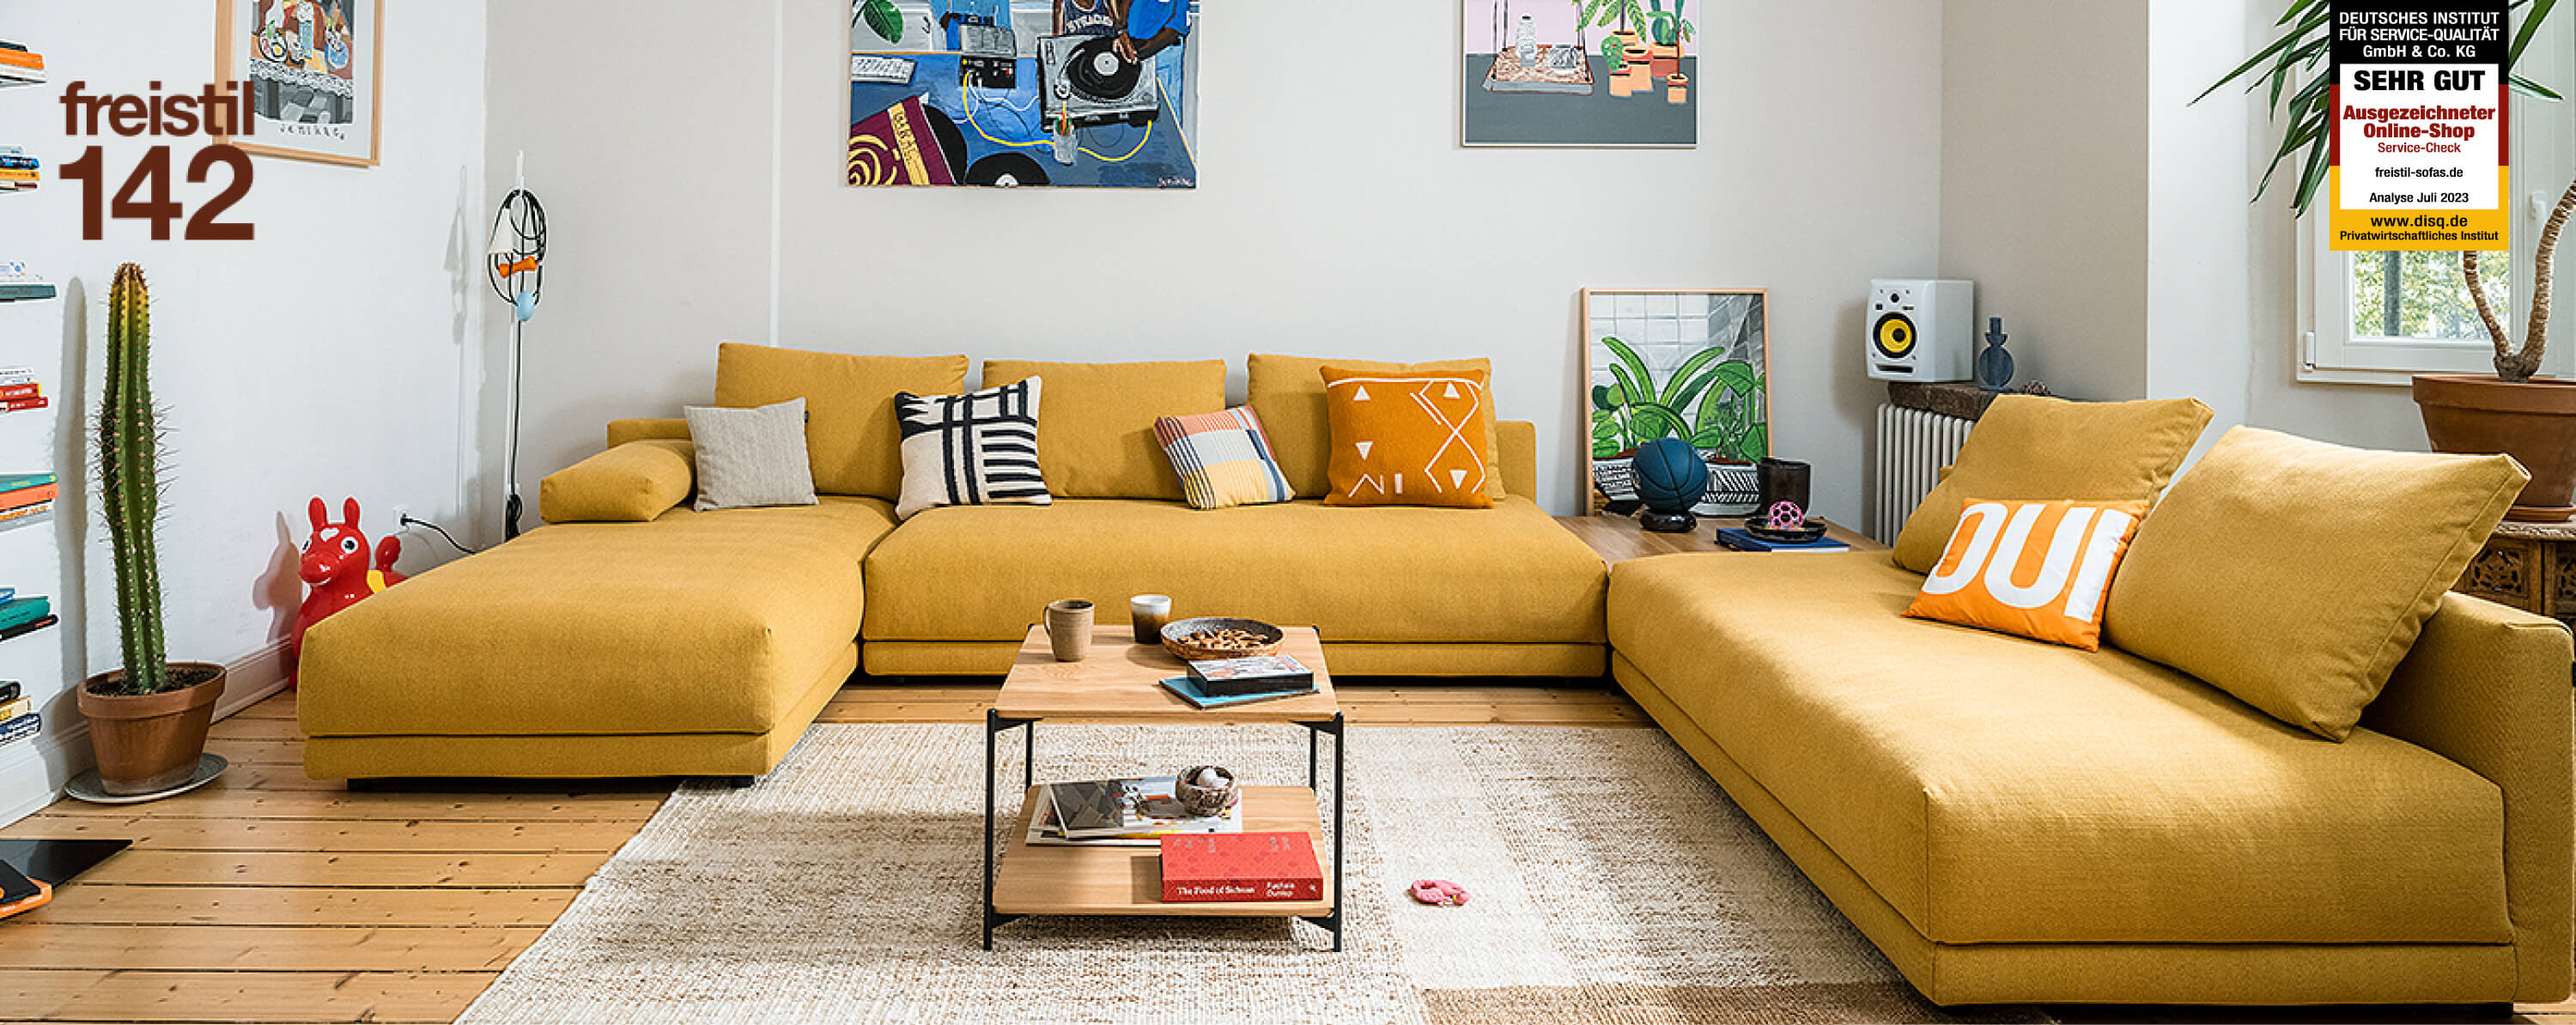 Couch, Wohnzimmer, Dekoration Ihres Zuhauses, Kissen, Tabelle, 